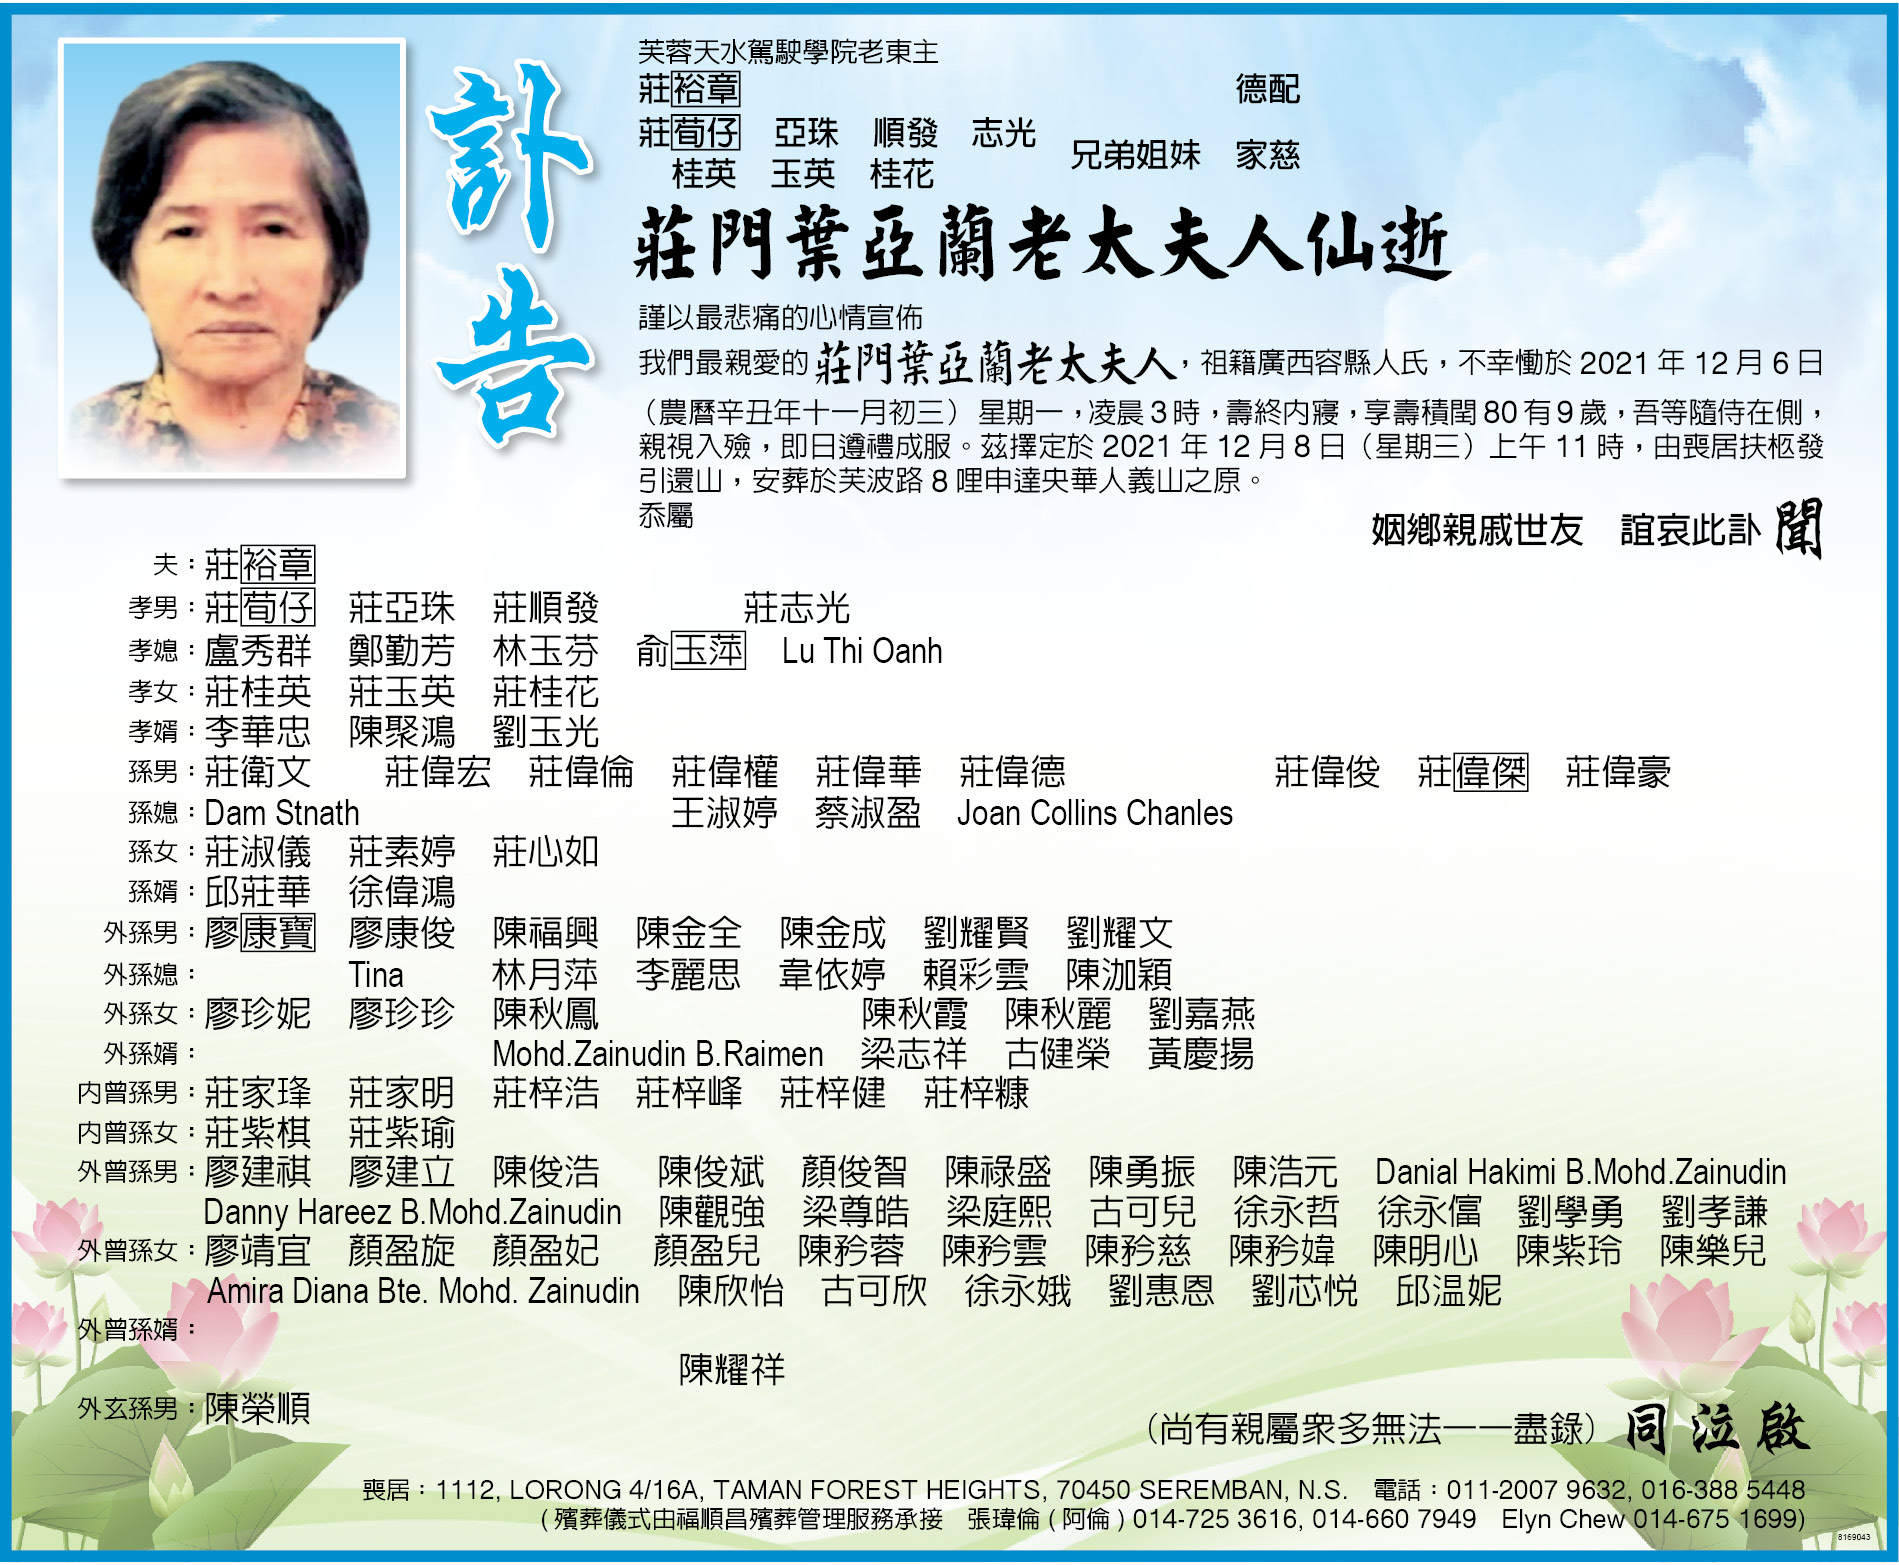 森州芙蓉莊门叶亚兰老太夫人仙逝于12月8日举殡 中國報china Press